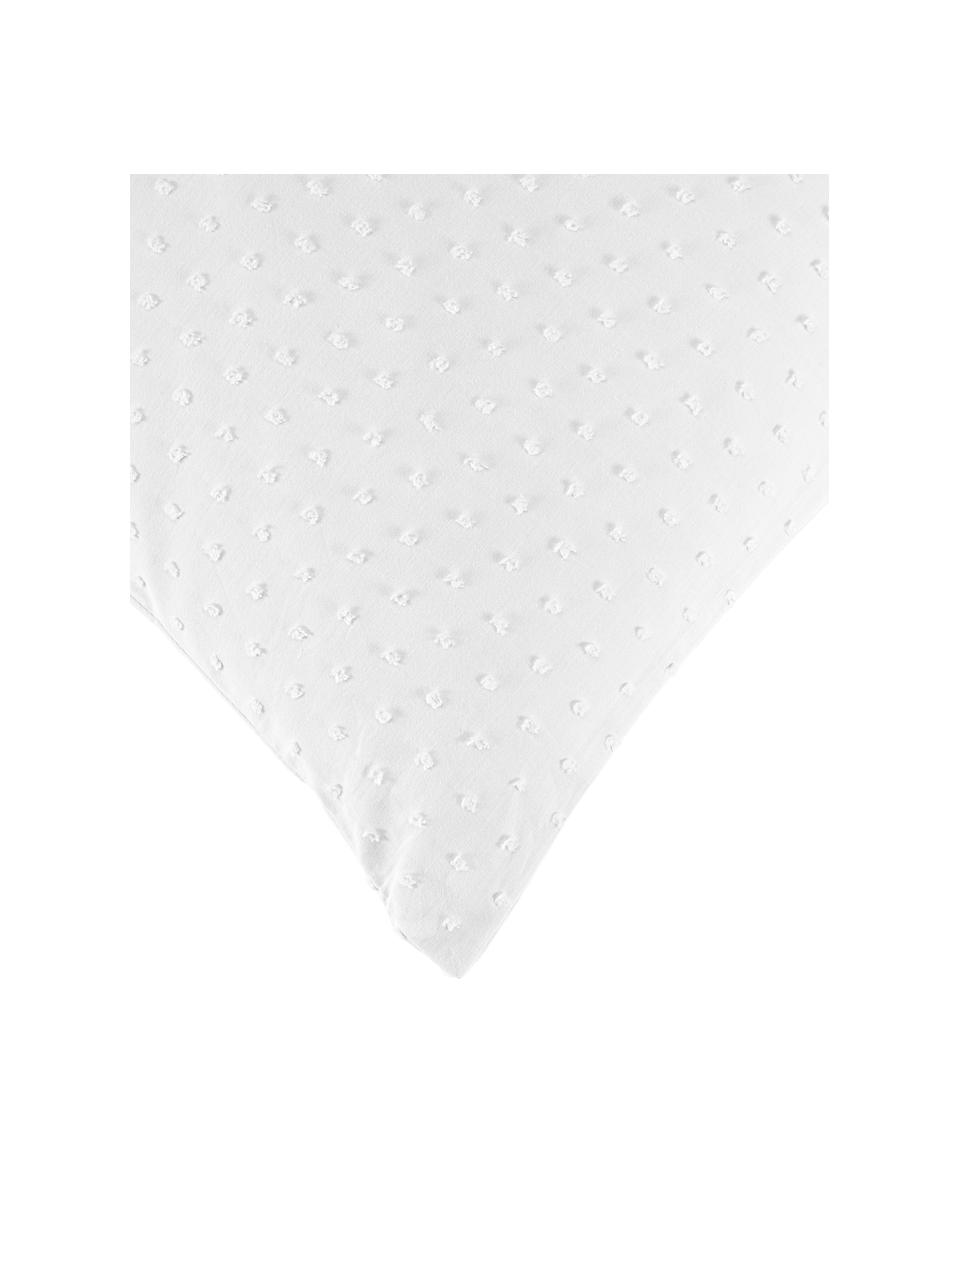 Plumetti-Bettwäsche Aloide, Webart: Plumetti Fadendichte 160 , Weiß, 200 x 200 cm + 2 Kissen 80 x 80 cm